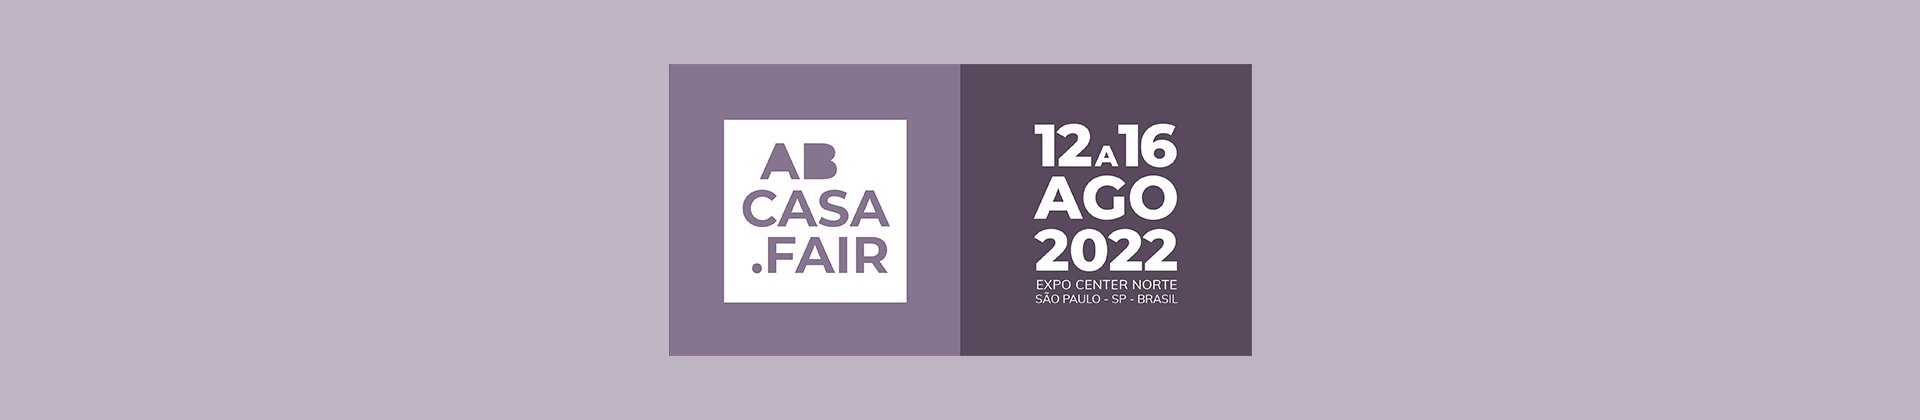 ABCasa Fair